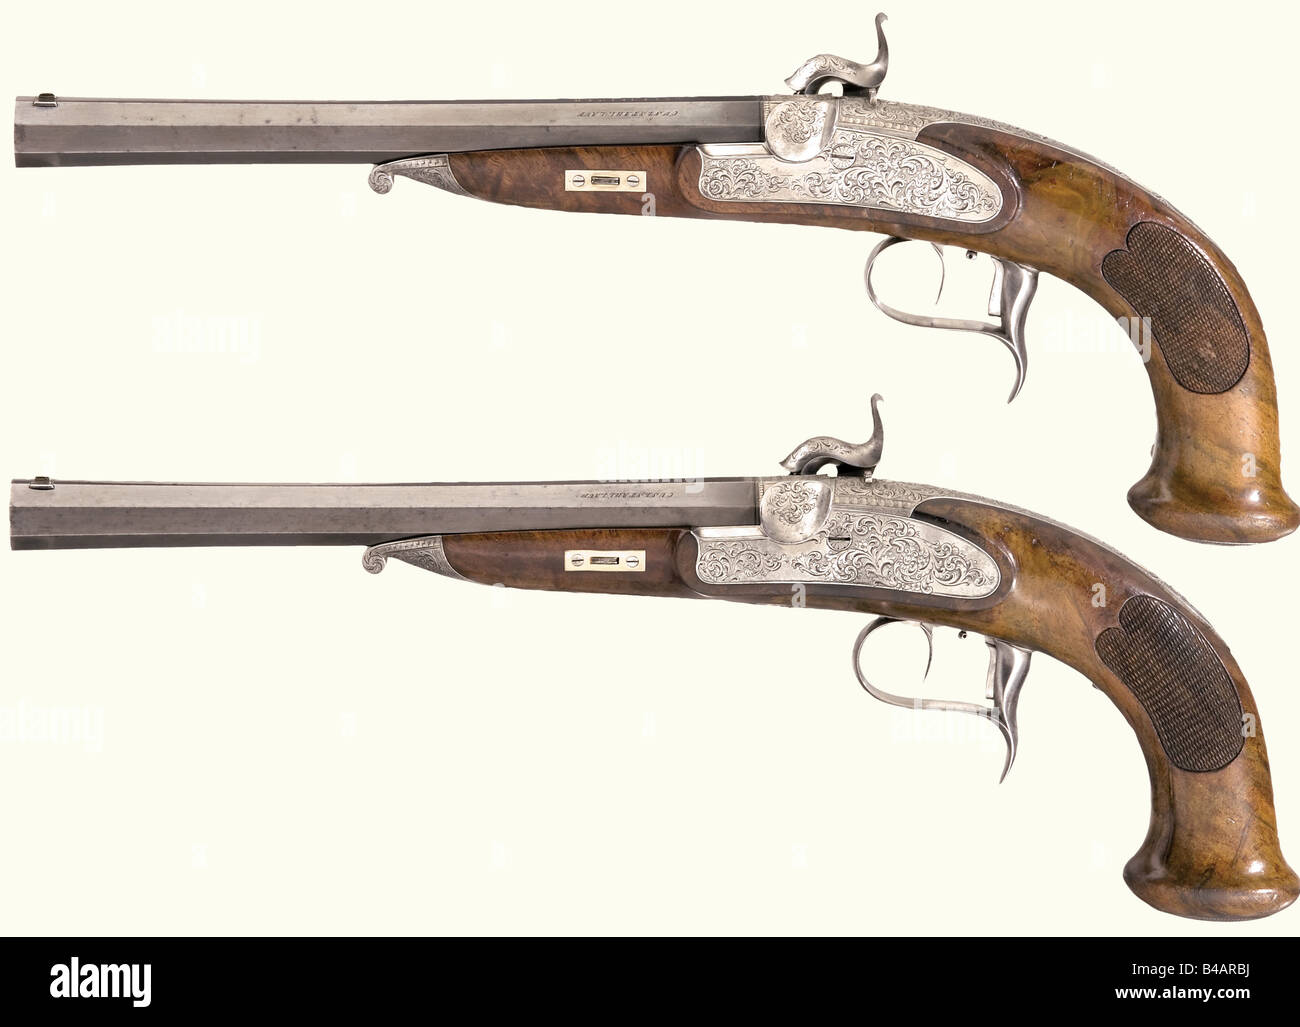 Eine Pistolenhülle mit vier Schlagpistolen, Franz Leutheuser,  Graz/Steiermark, ca. um das Jahr 1840. Achteckige, blutige und beengte  Fässer mit sieben Rillen riechenden Boren im Kaliber 11 mm. Jede ist auf  der Kammer